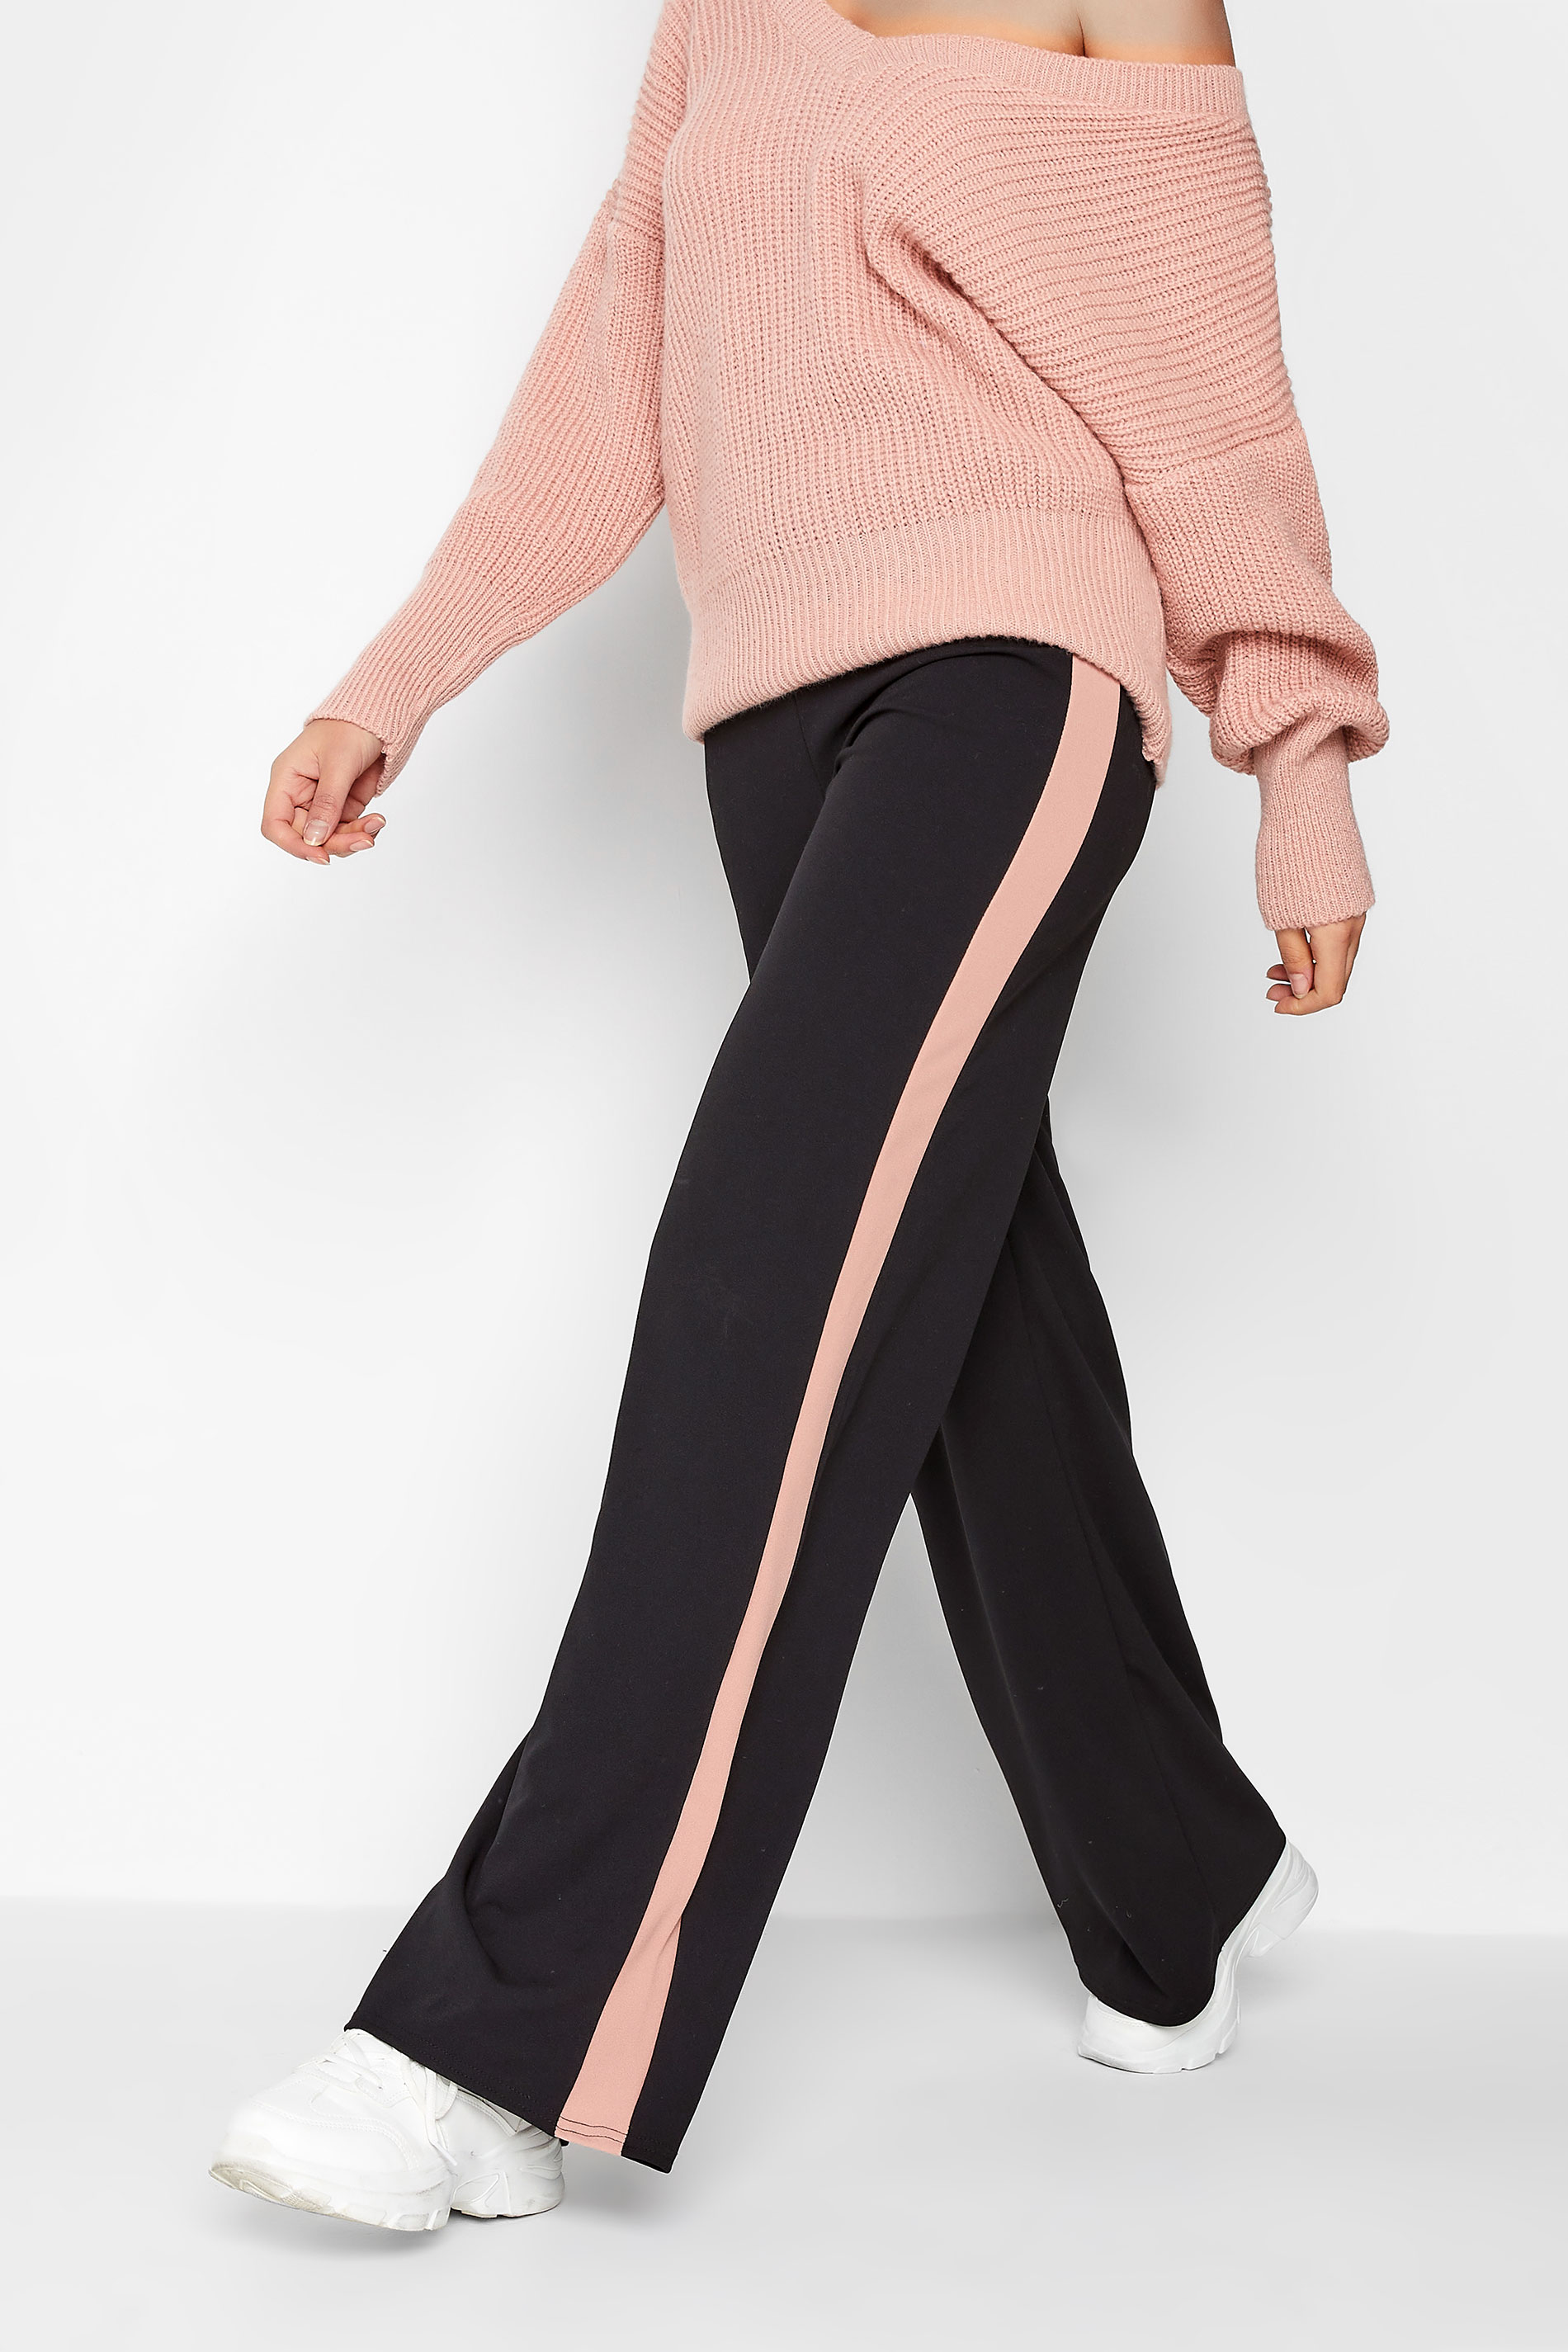 LTS Tall Women's Black & Pink Side Stripe Wide Leg Trousers